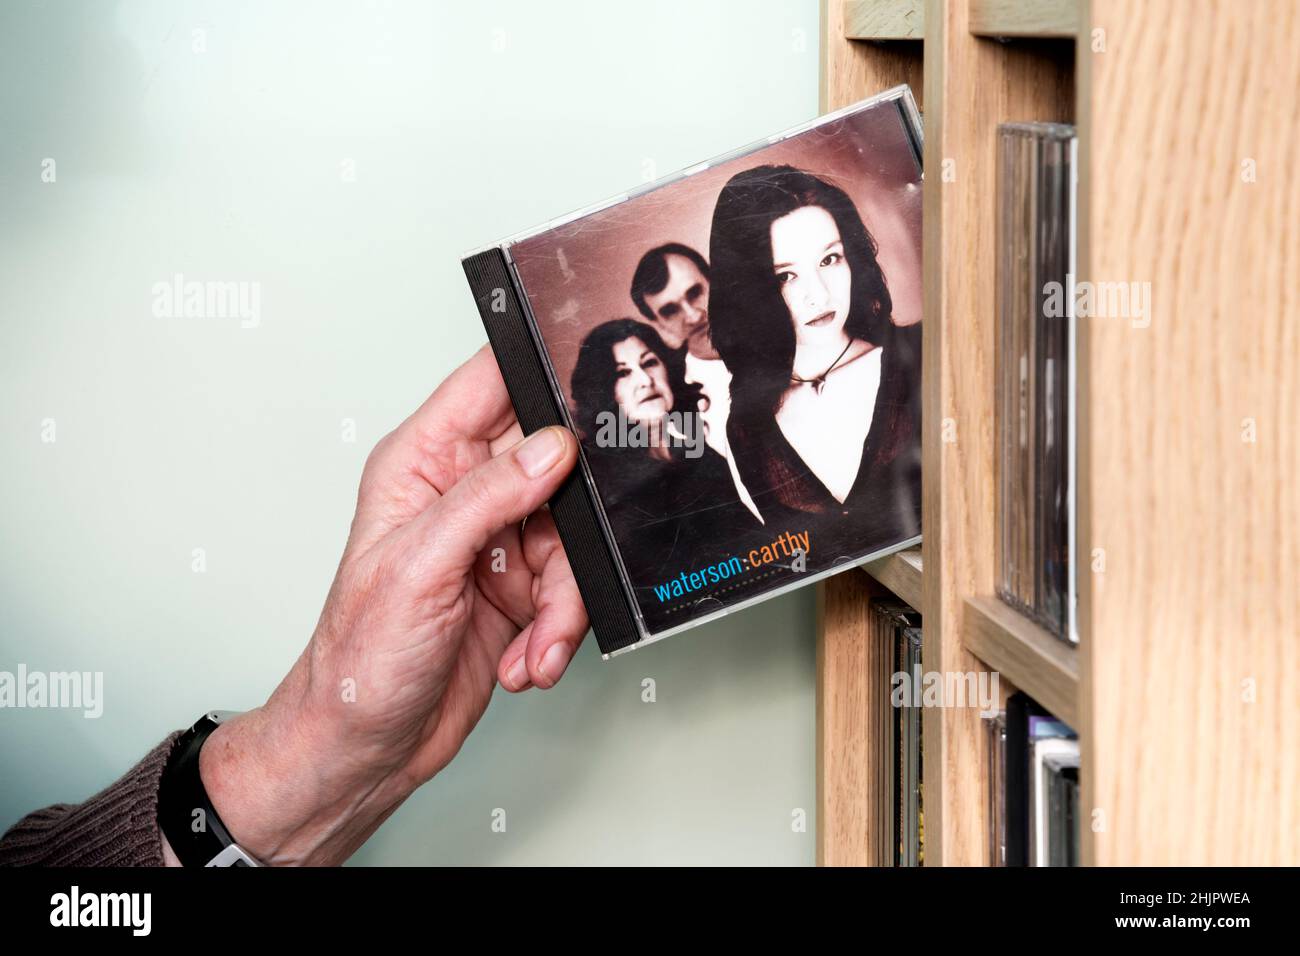 CD of Waterson:Carthy, 1st epónima álbum de 1994 del grupo folklórico inglés compuesto por Norma Waterson, Martin Carthy y Eliza Carthy siendo removidos del rack. Foto de stock